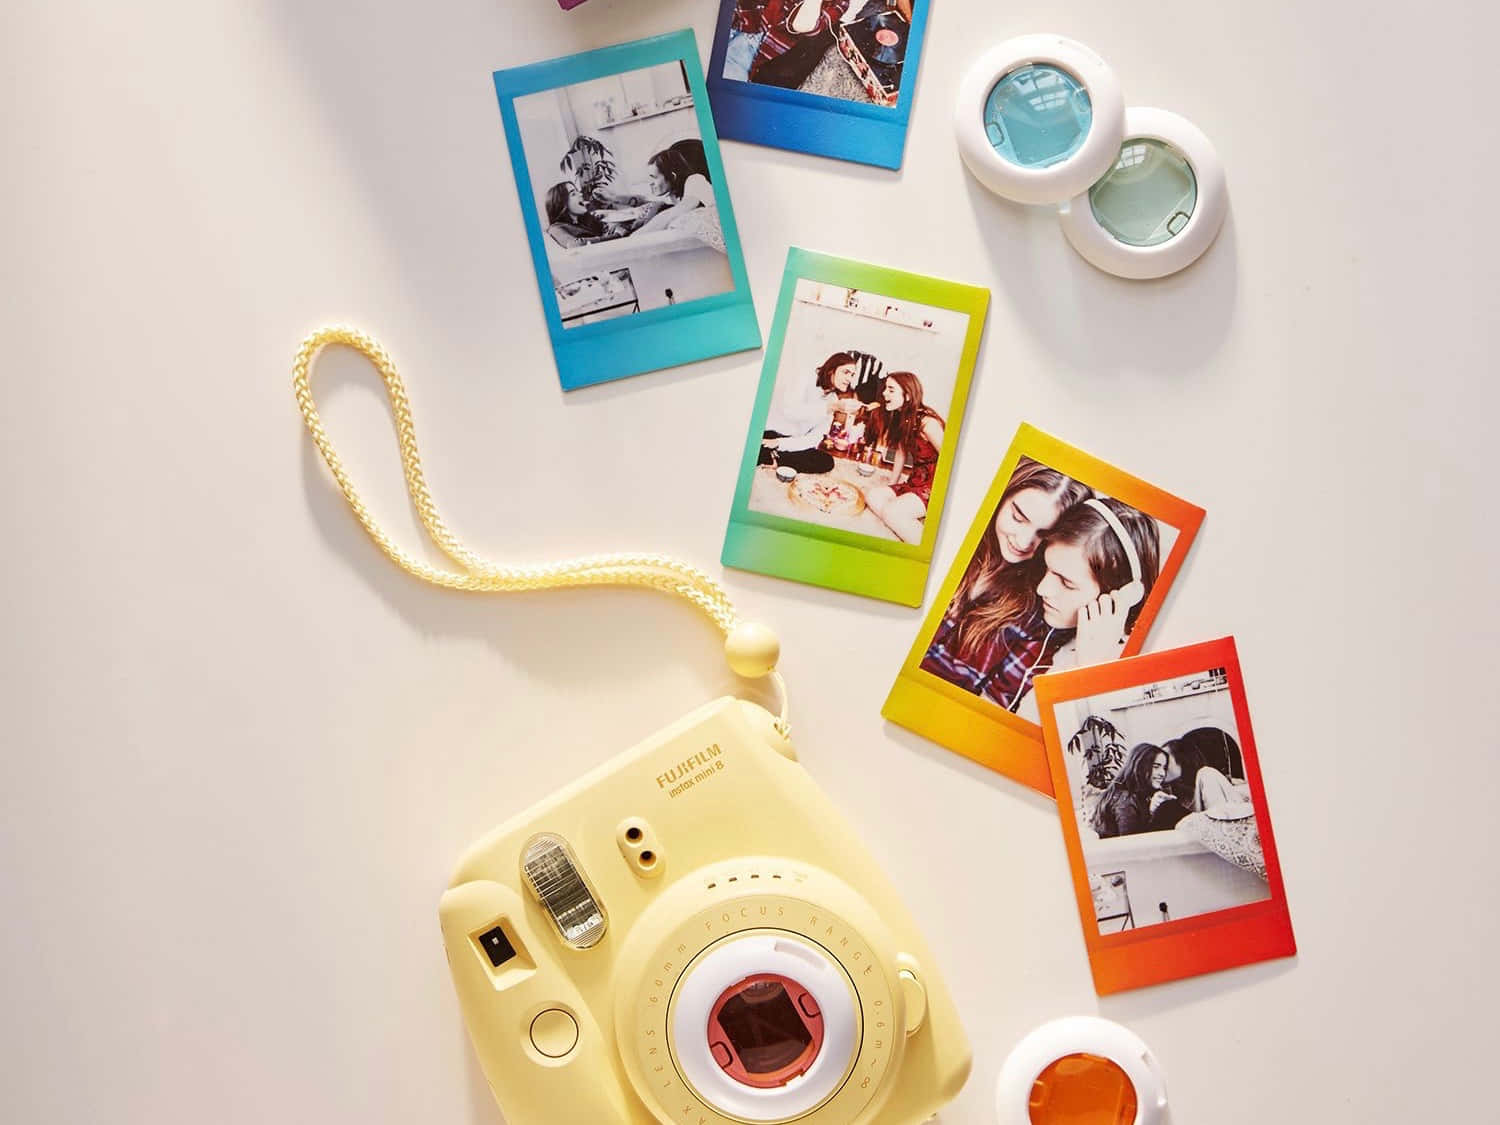 Instax Mini 70 Polaroid Camera Picture